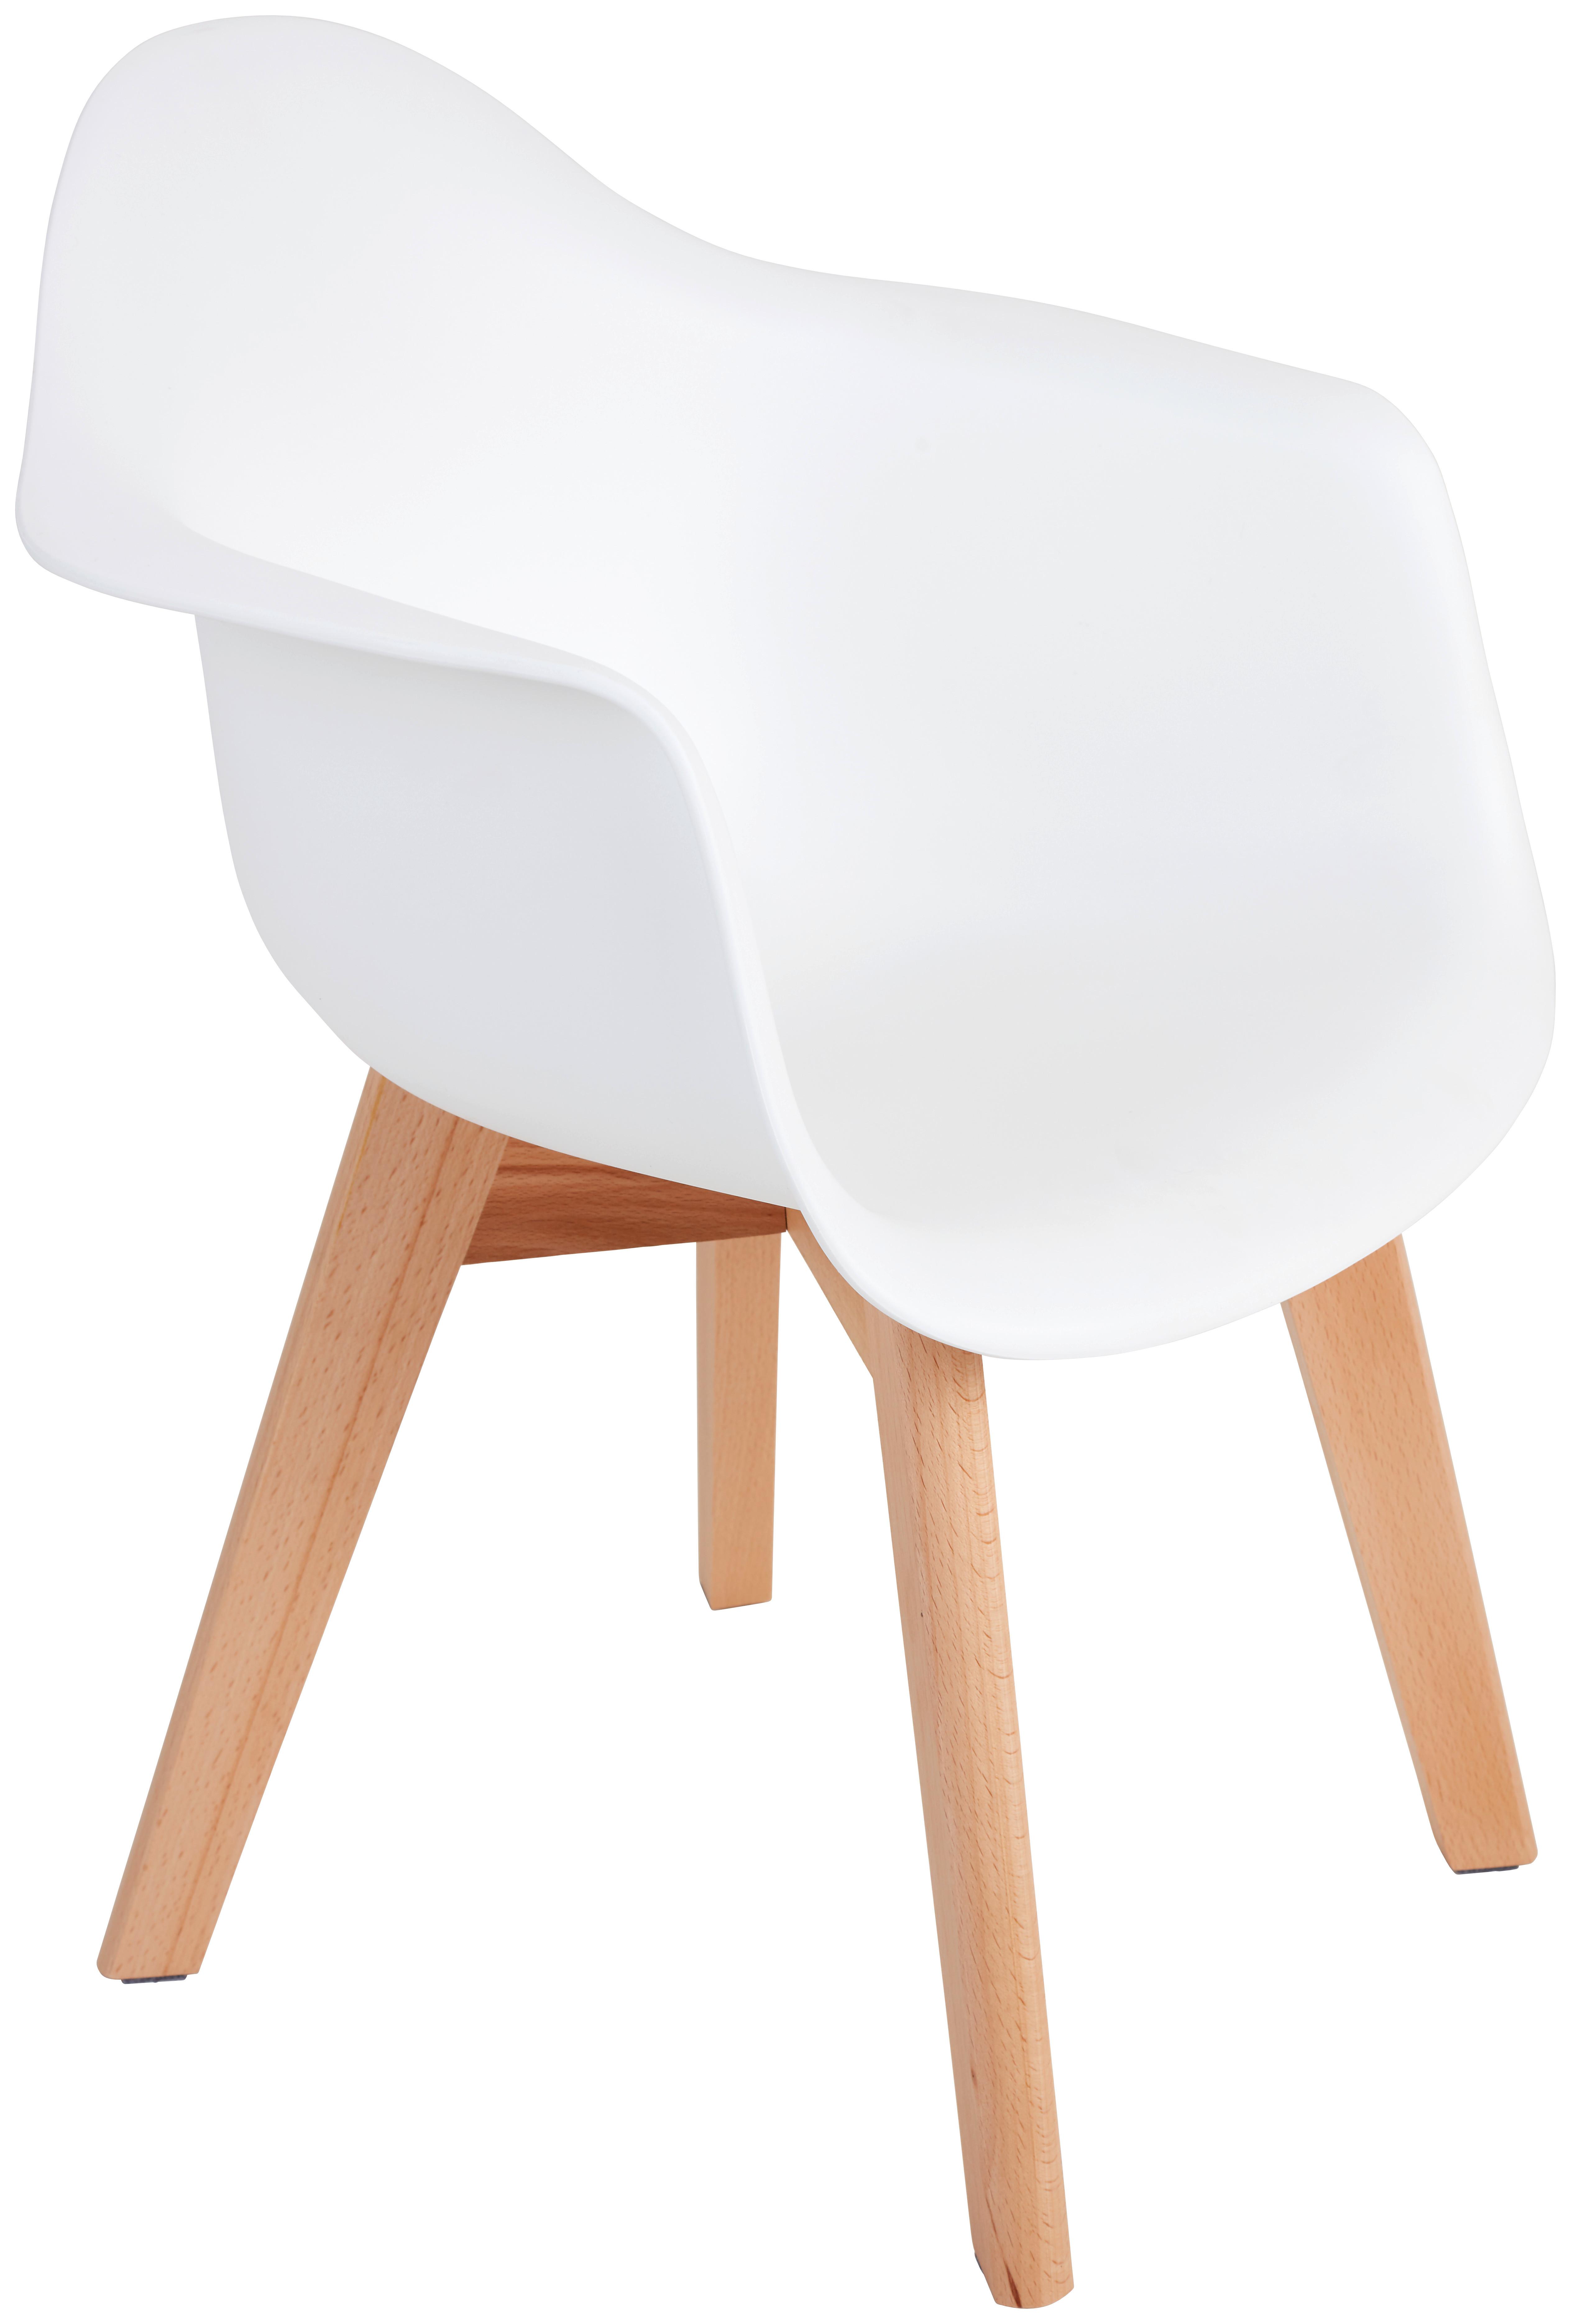 Dětská Židle Bambino - bílá/barvy buku, Moderní, dřevo/plast (42/57,5/30cm) - Ondega